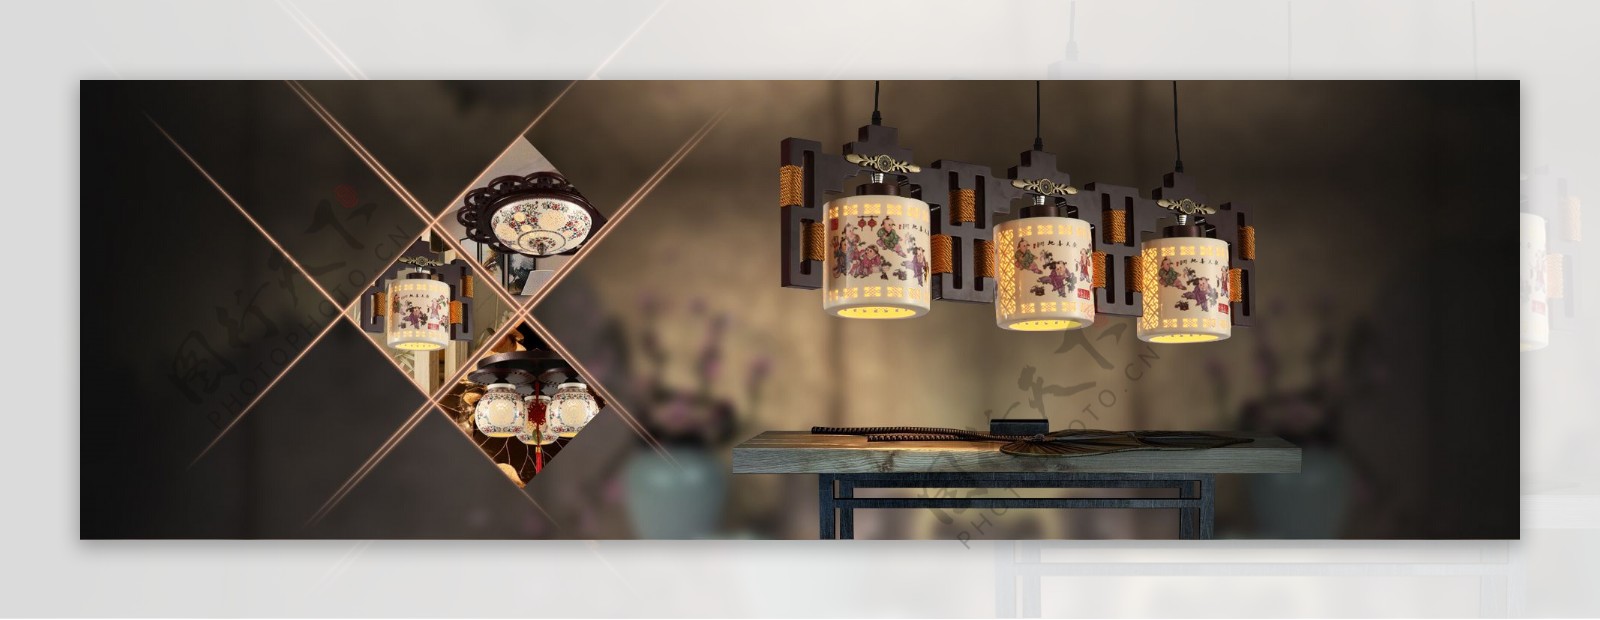 中国风淘宝陶瓷灯具促销海报